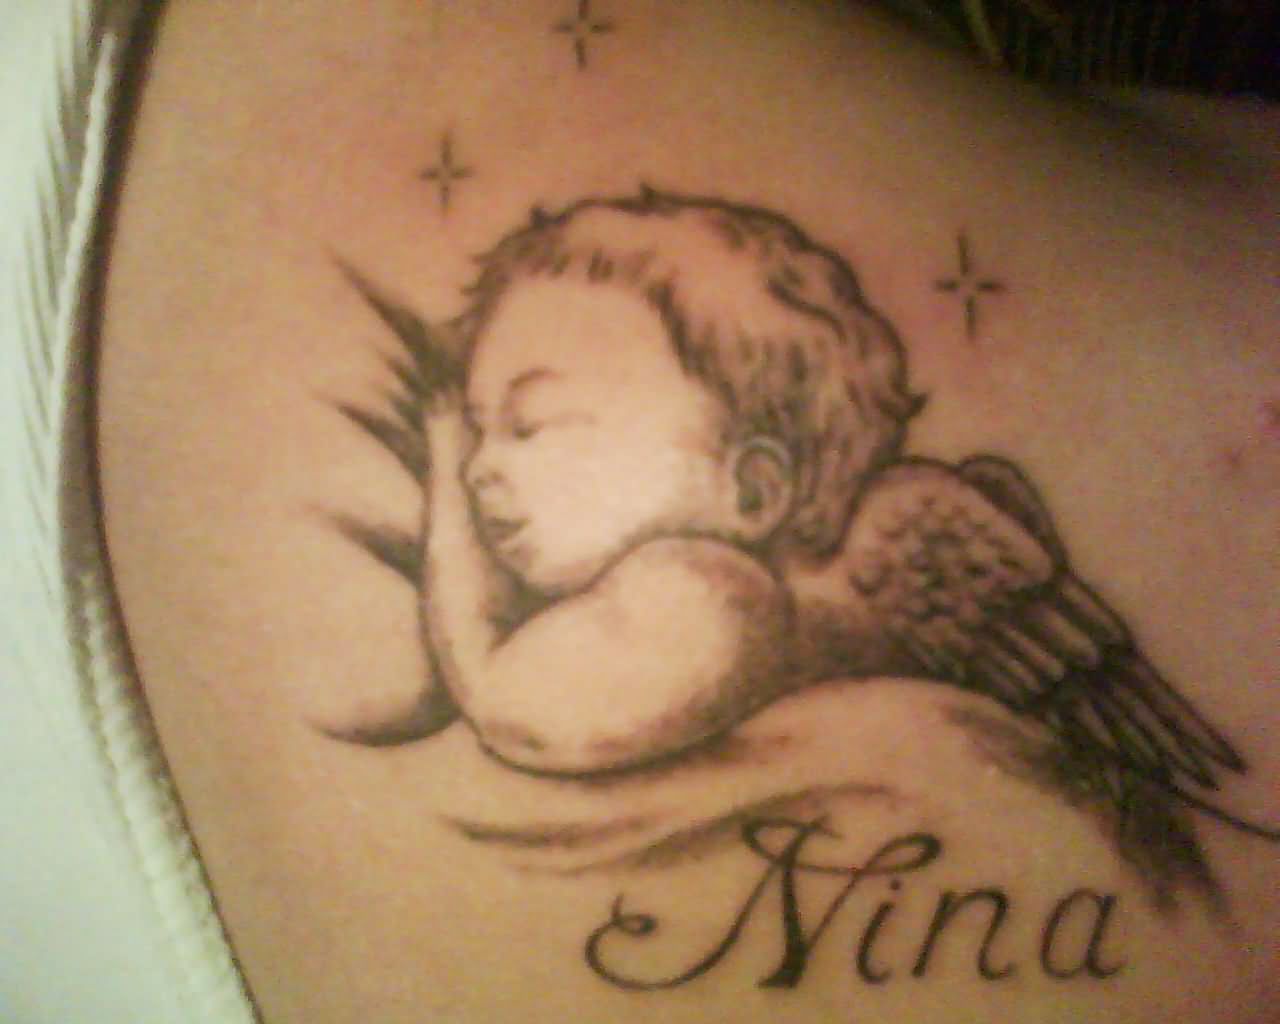 Nina – Cute Sleeping Baby Angel Tattoo Design